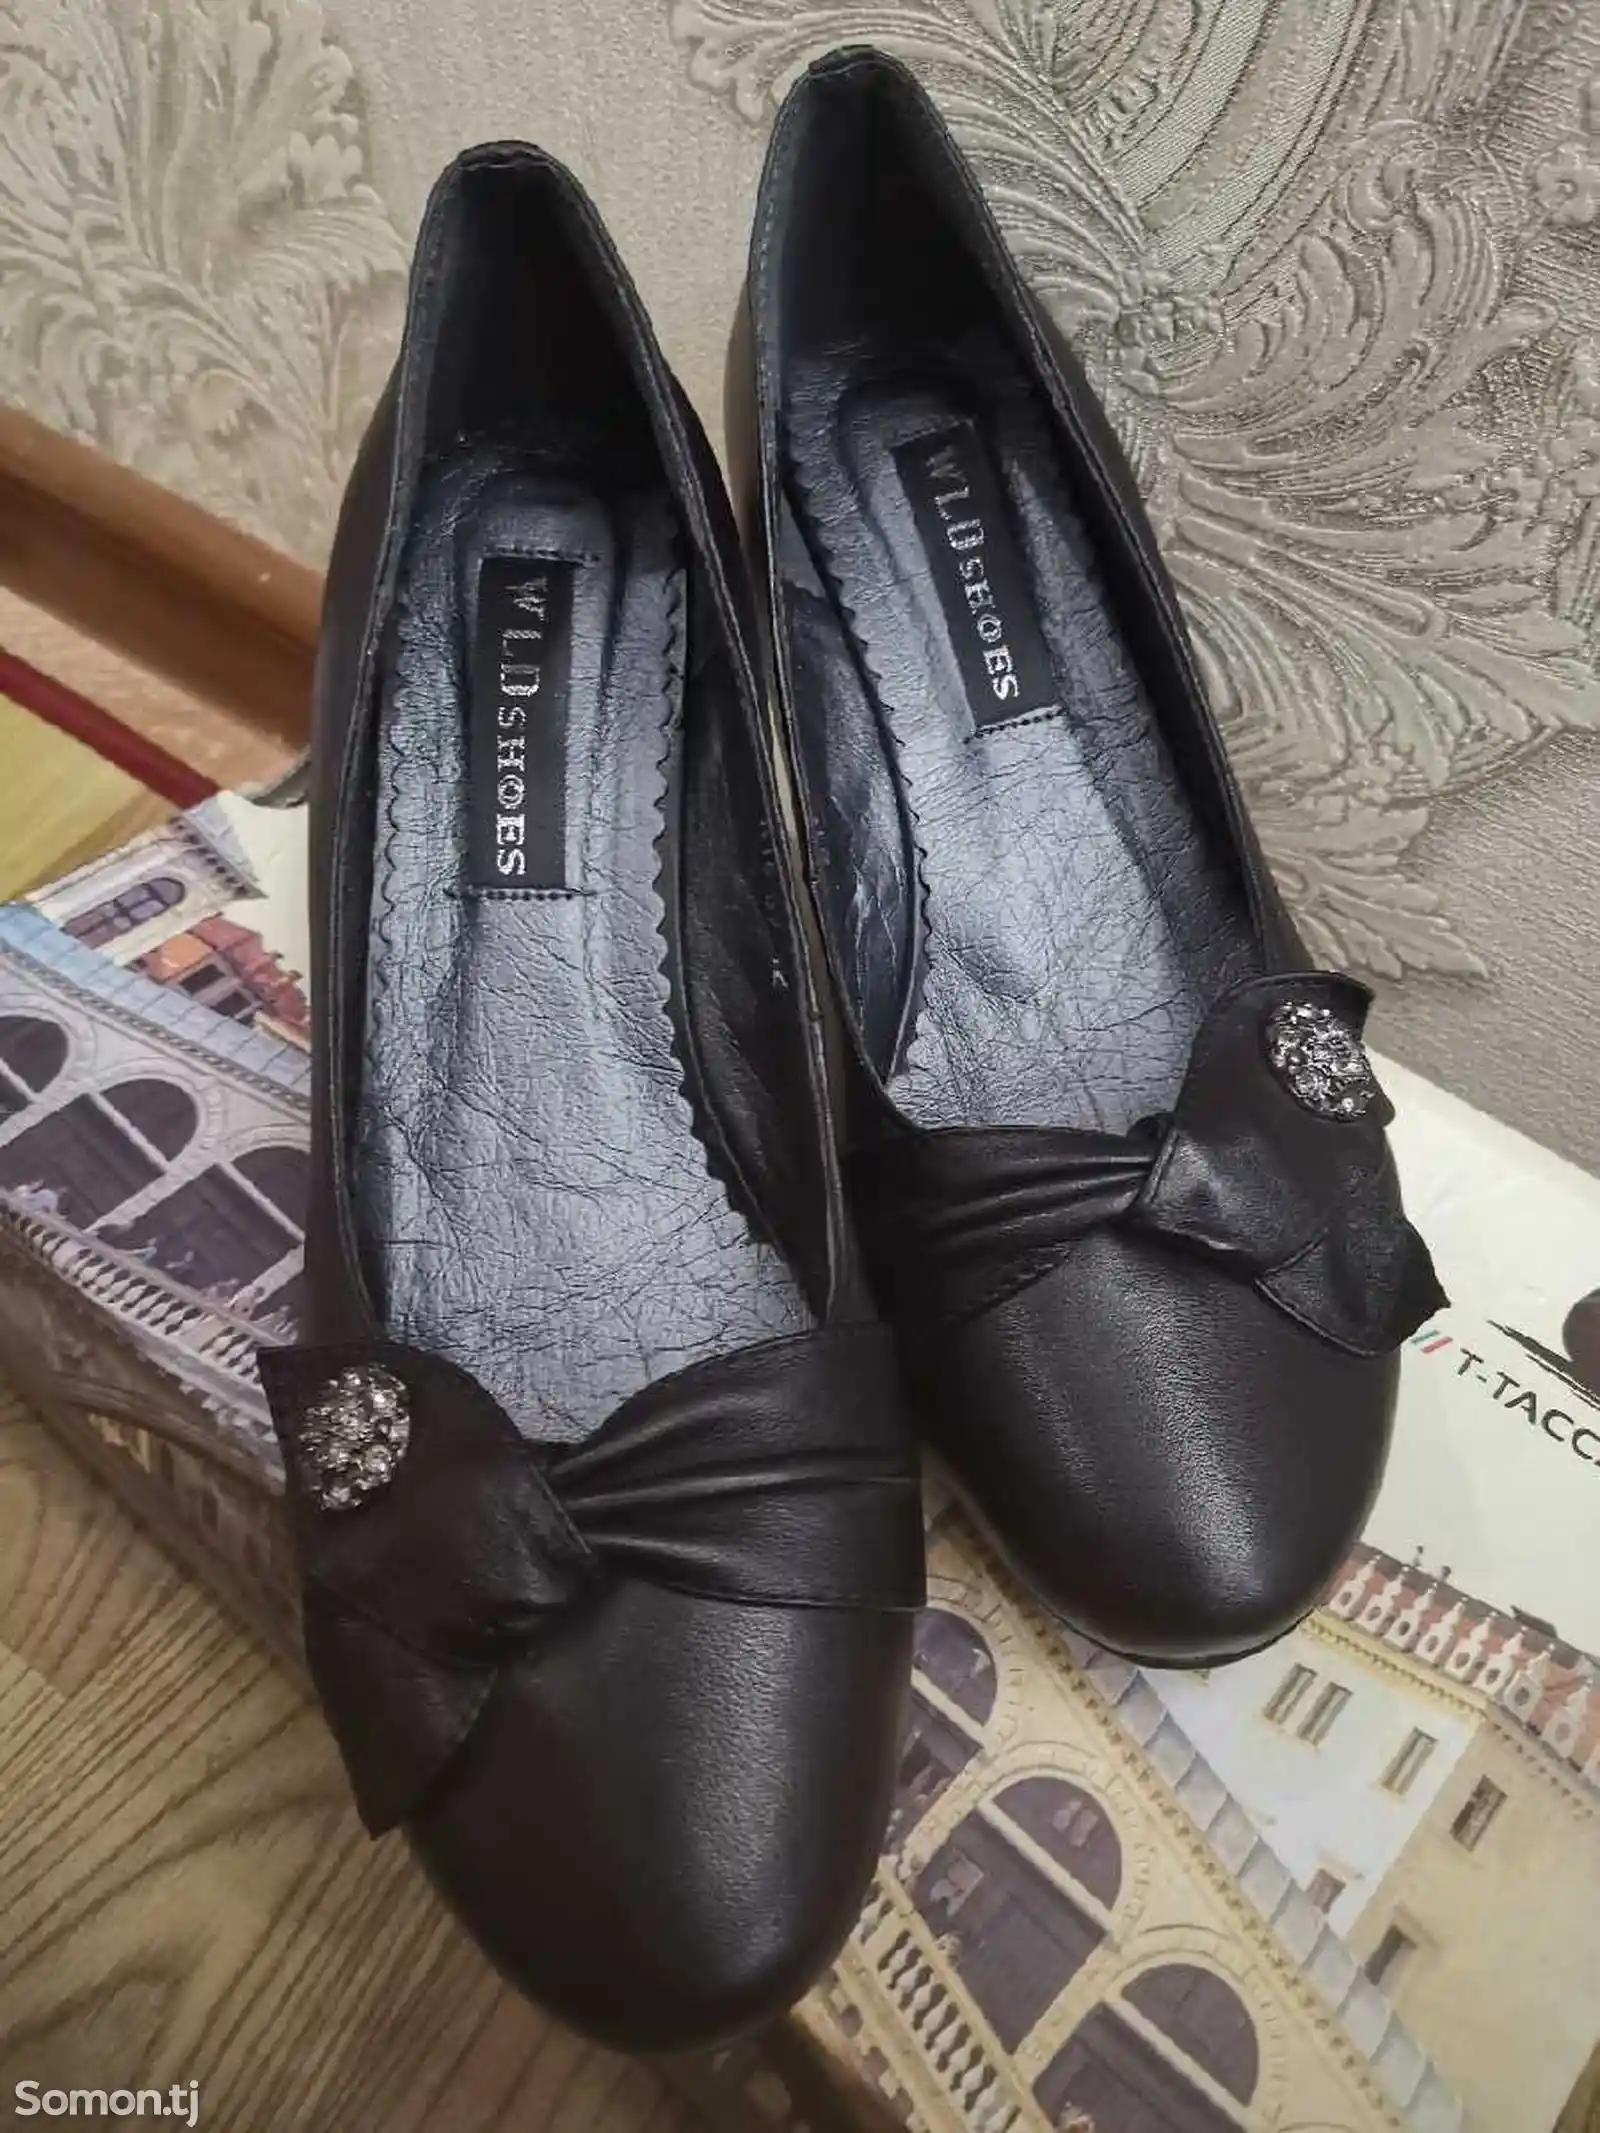 Жеснкие туфли-1